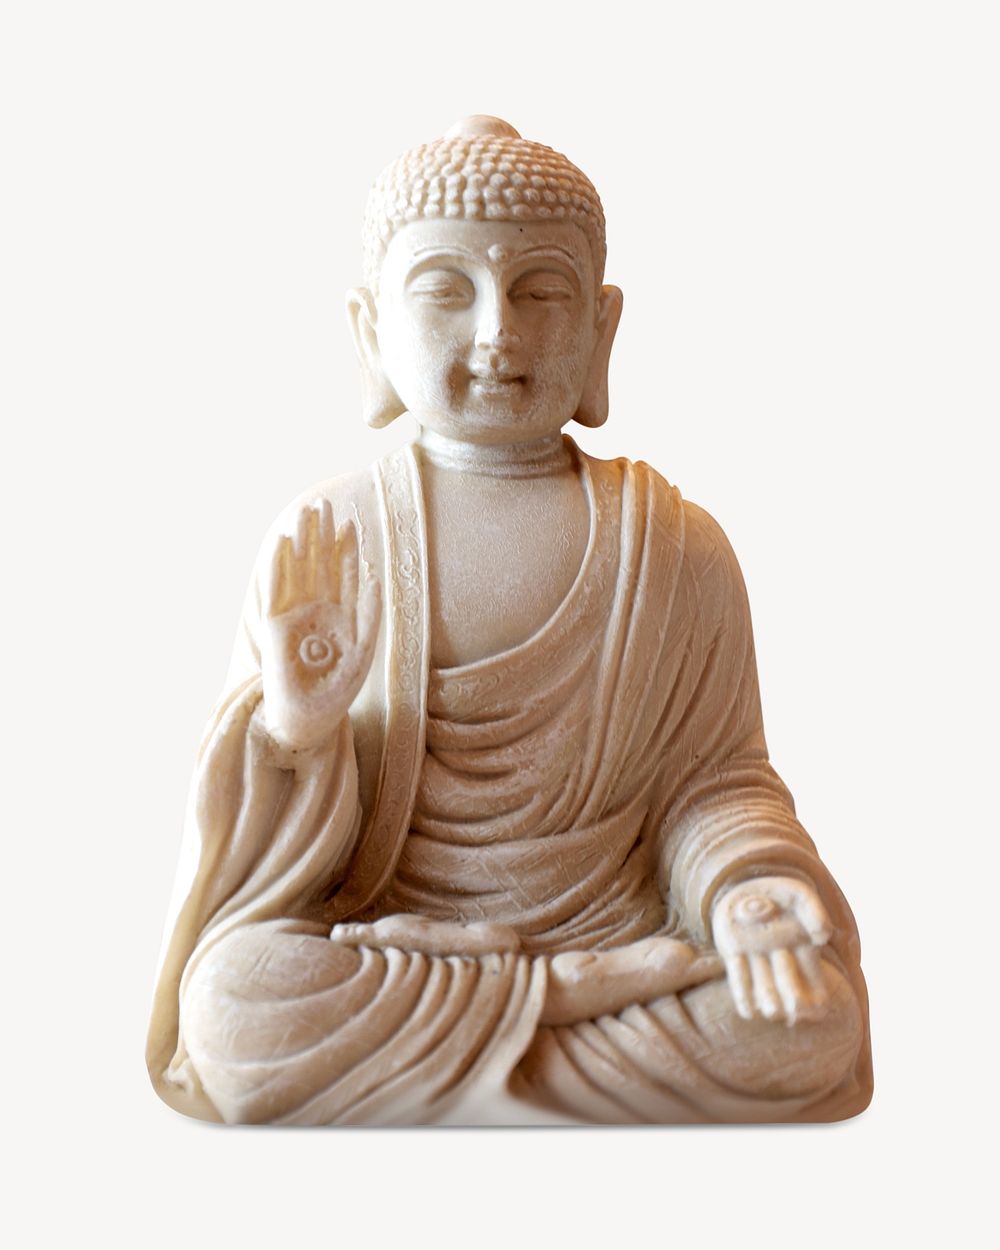 Buddha statue, isolated image